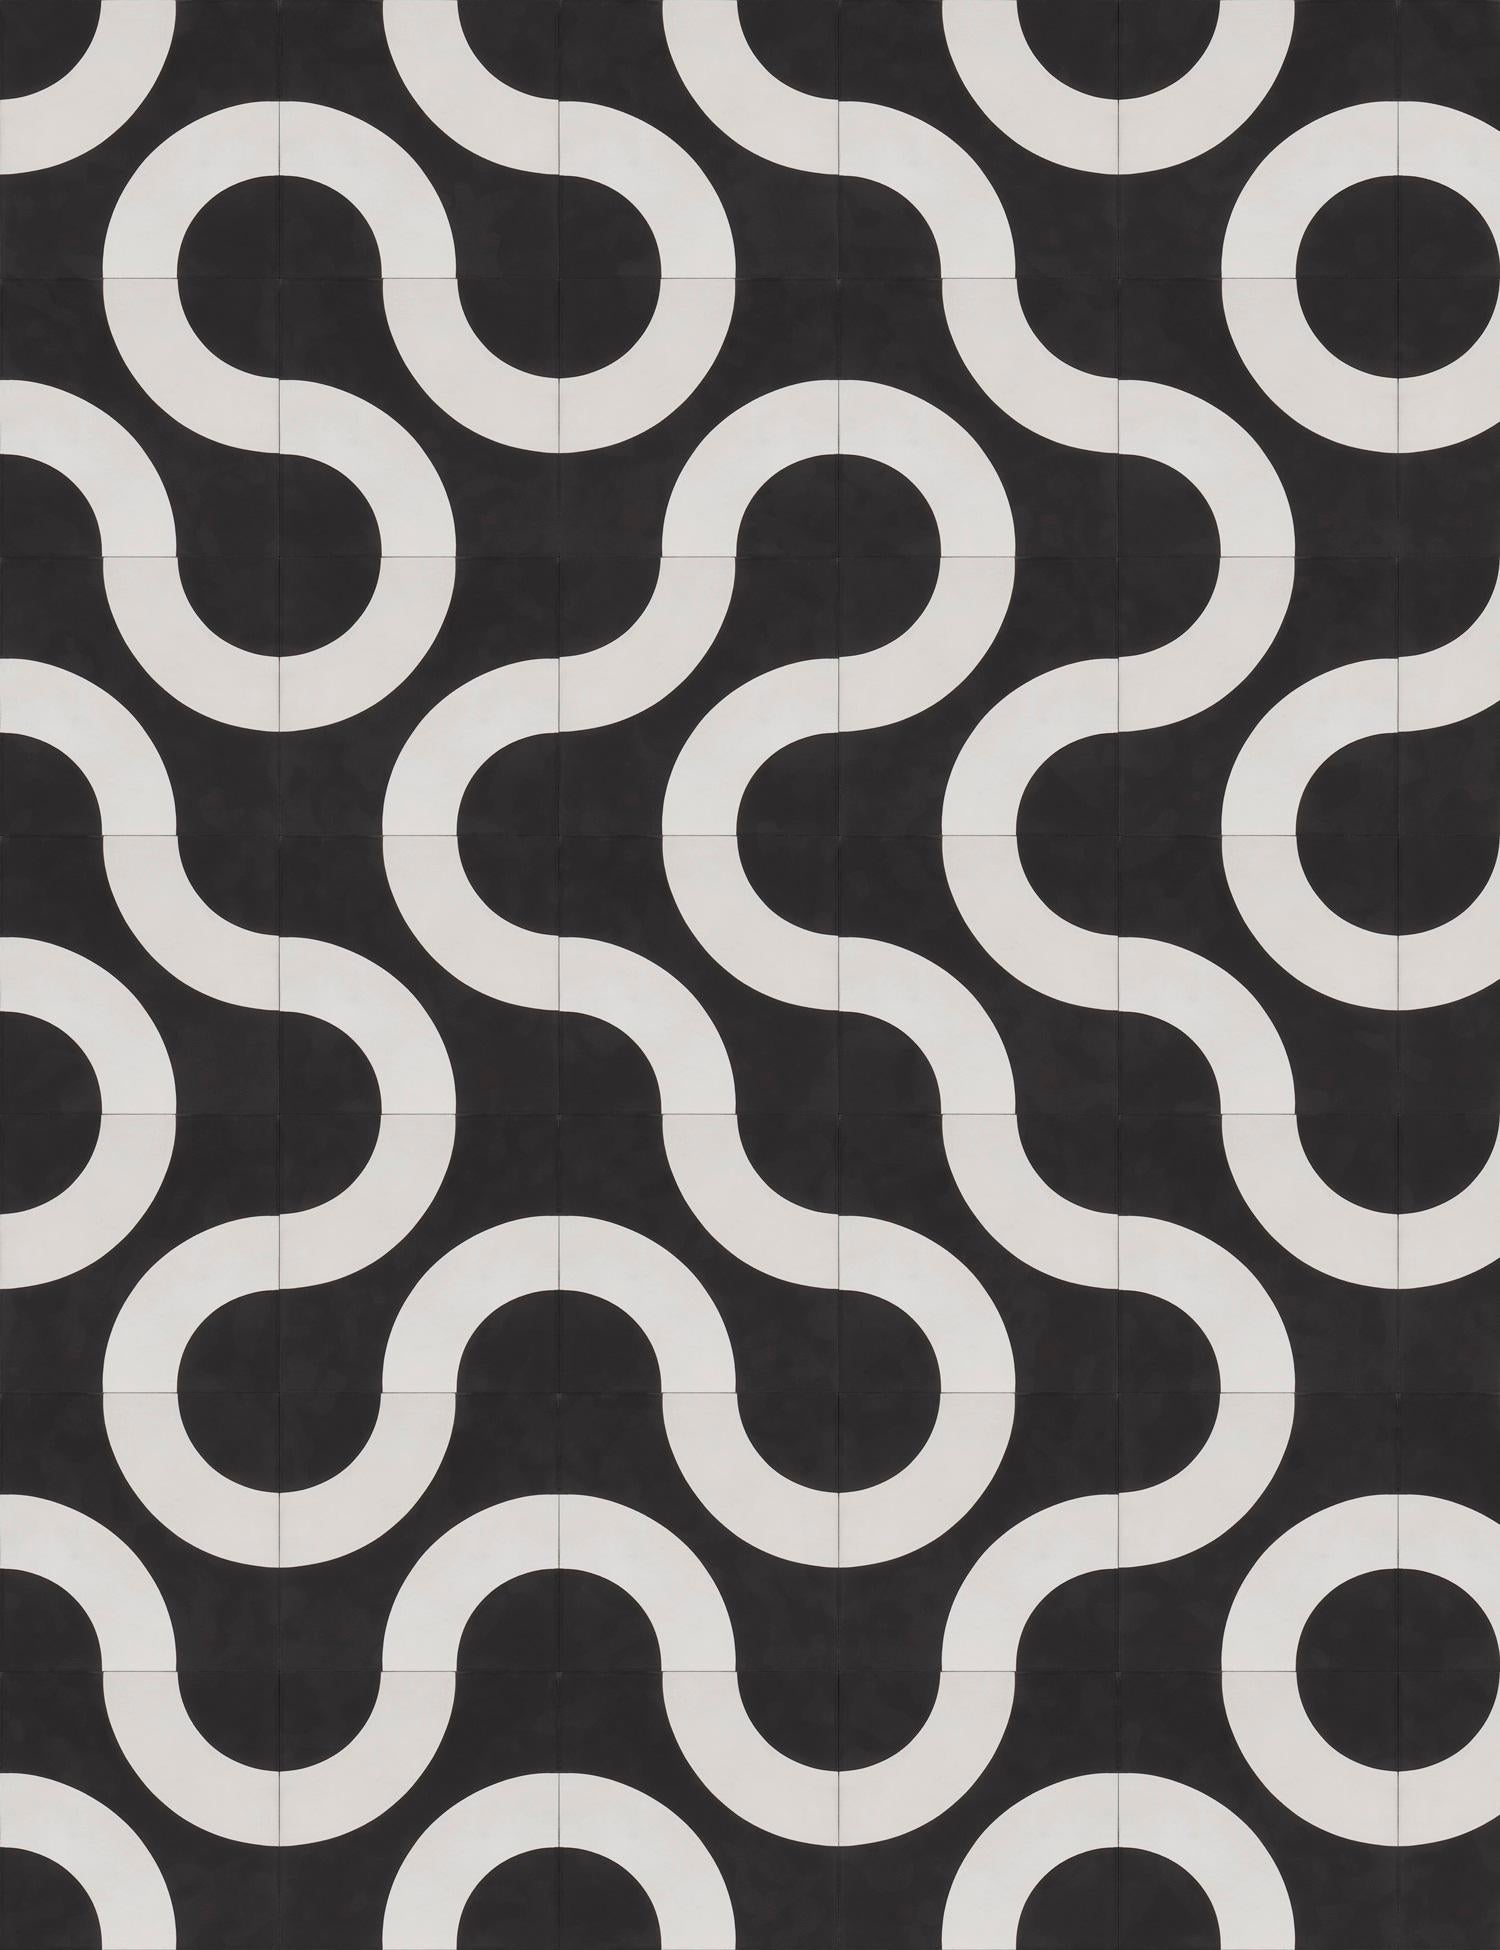 Diese gewölbte geometrische Form schafft ein weiches Labyrinth mit unendlichen Möglichkeiten.
Zementfliesen
Art: Enkaustische Zementfliese
Herstellungsverfahren: Hydraulisches Pressverfahren
Materialien: Weißzement, Steinmehl, Zusatzstoffe,